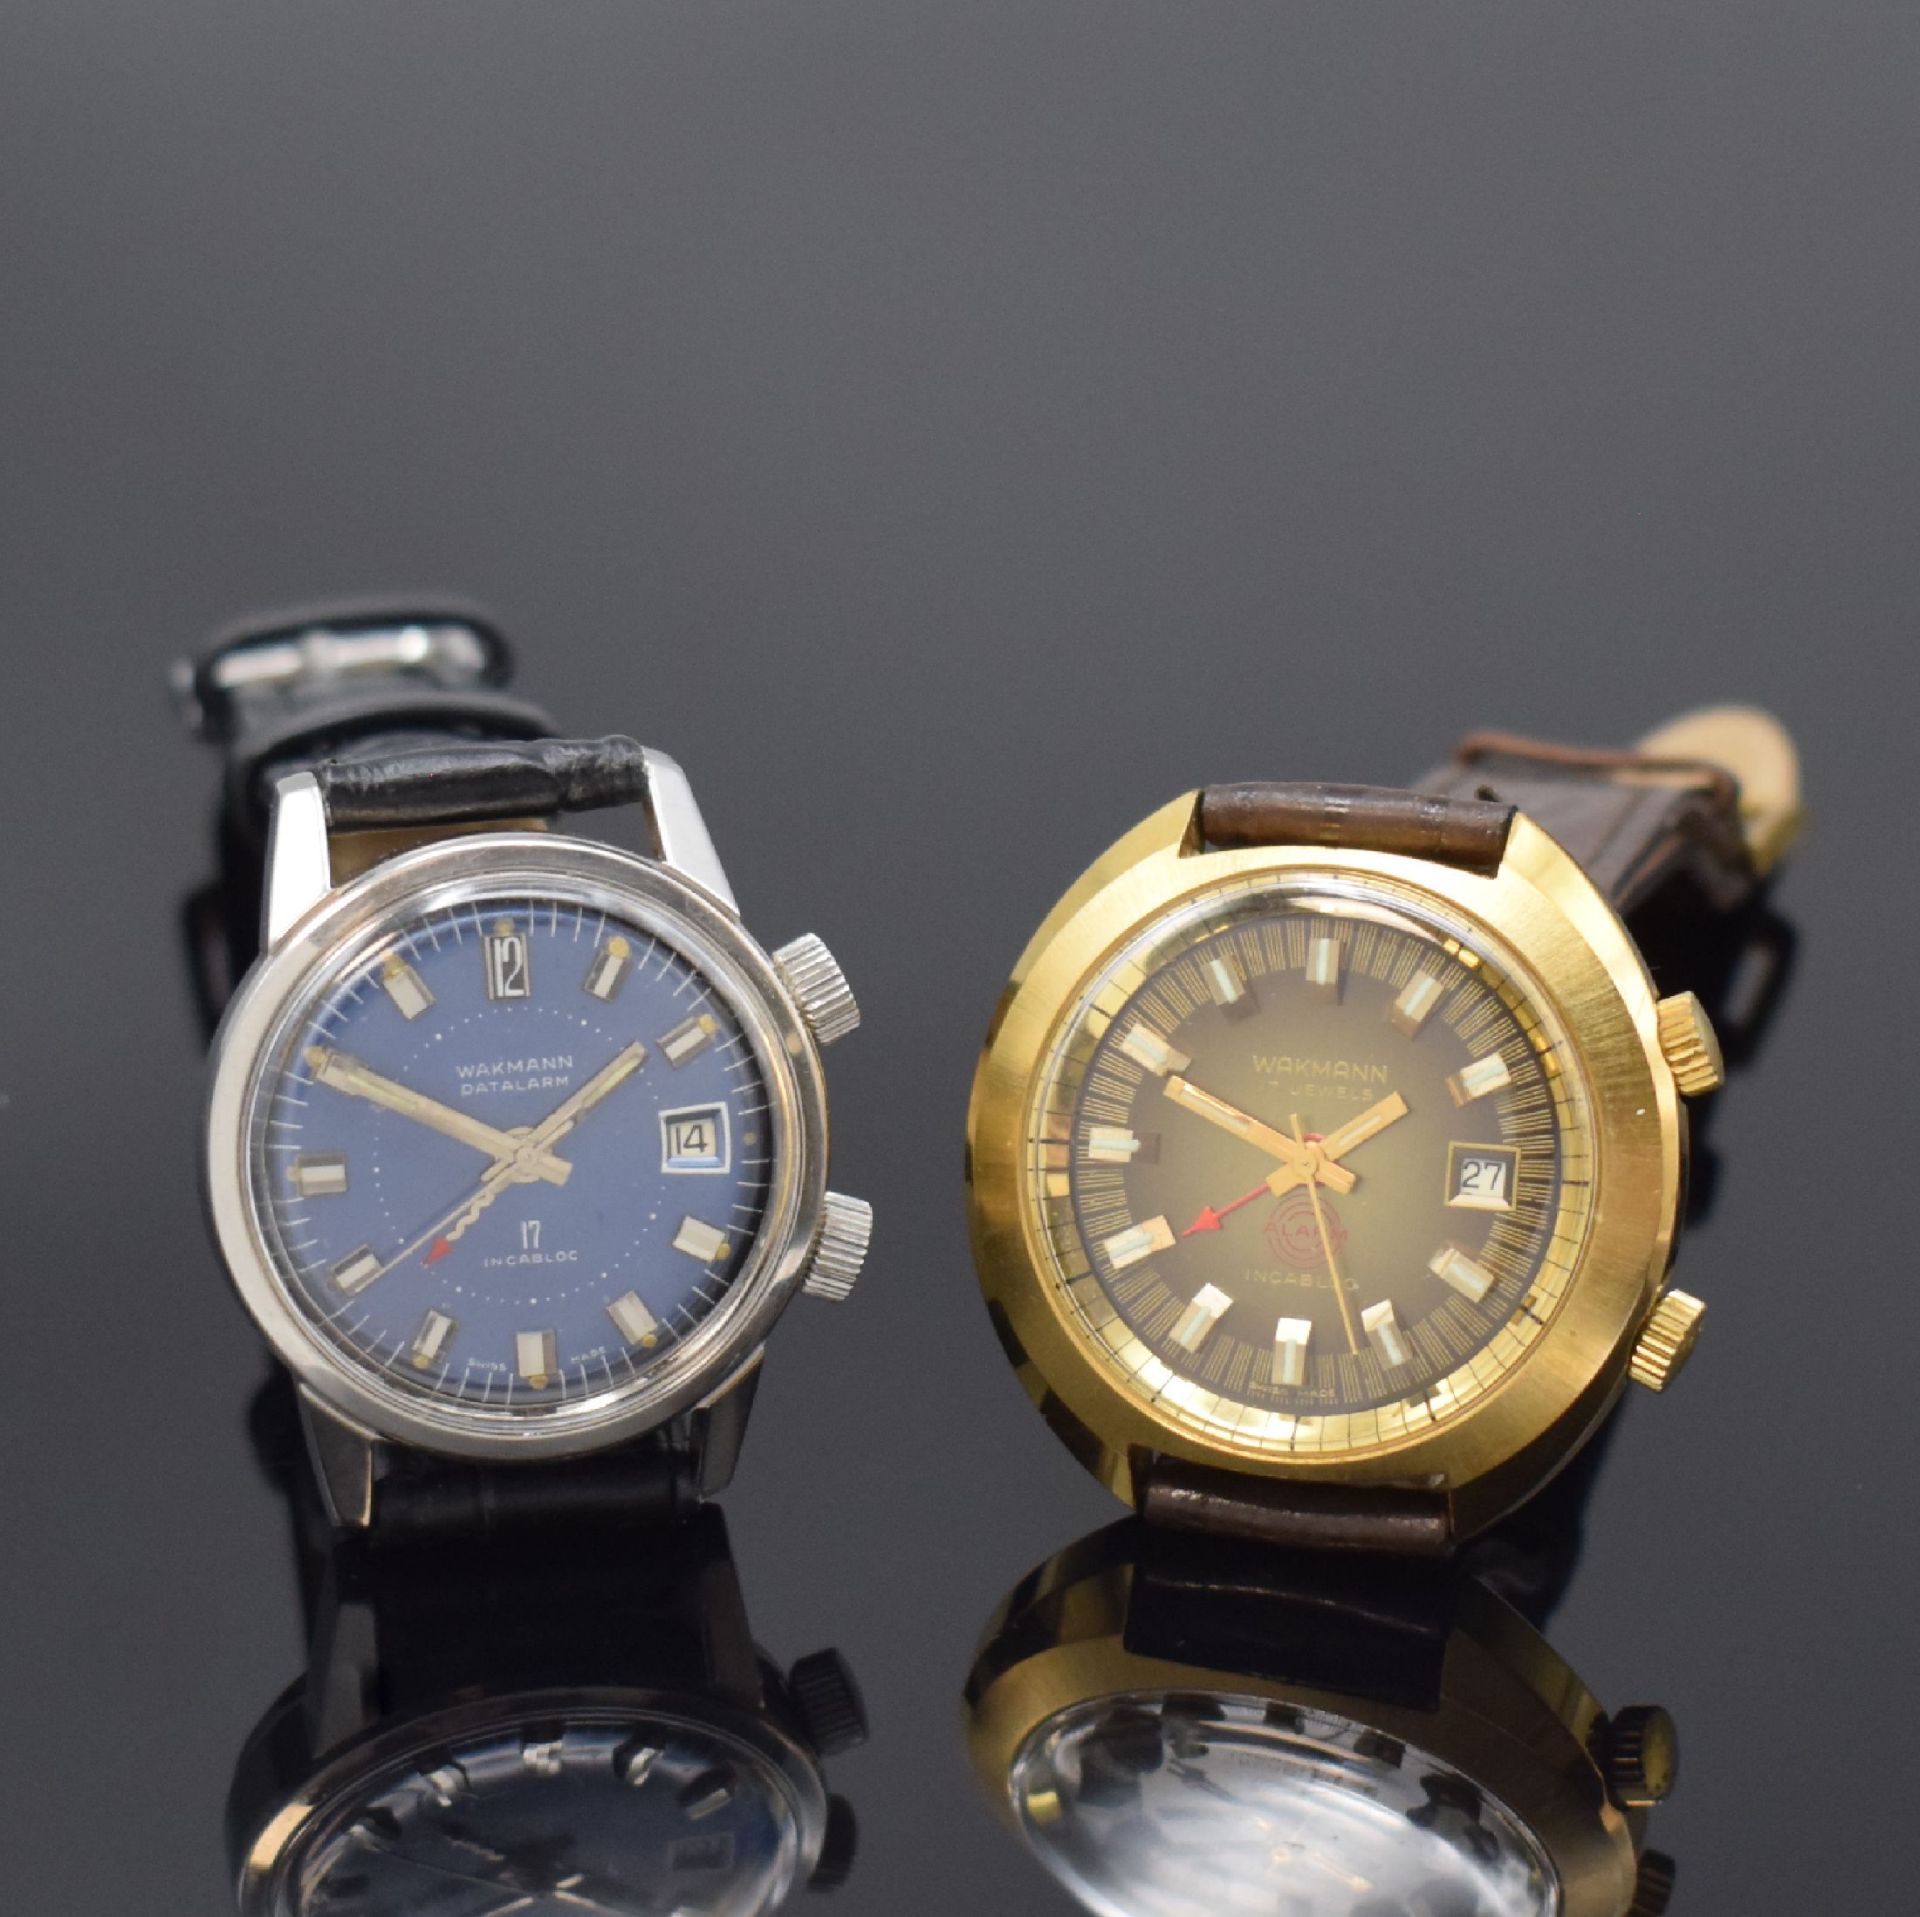 WAKMANN 2 Armbandwecker Kaliber AS 1931, Schweiz um 1970,